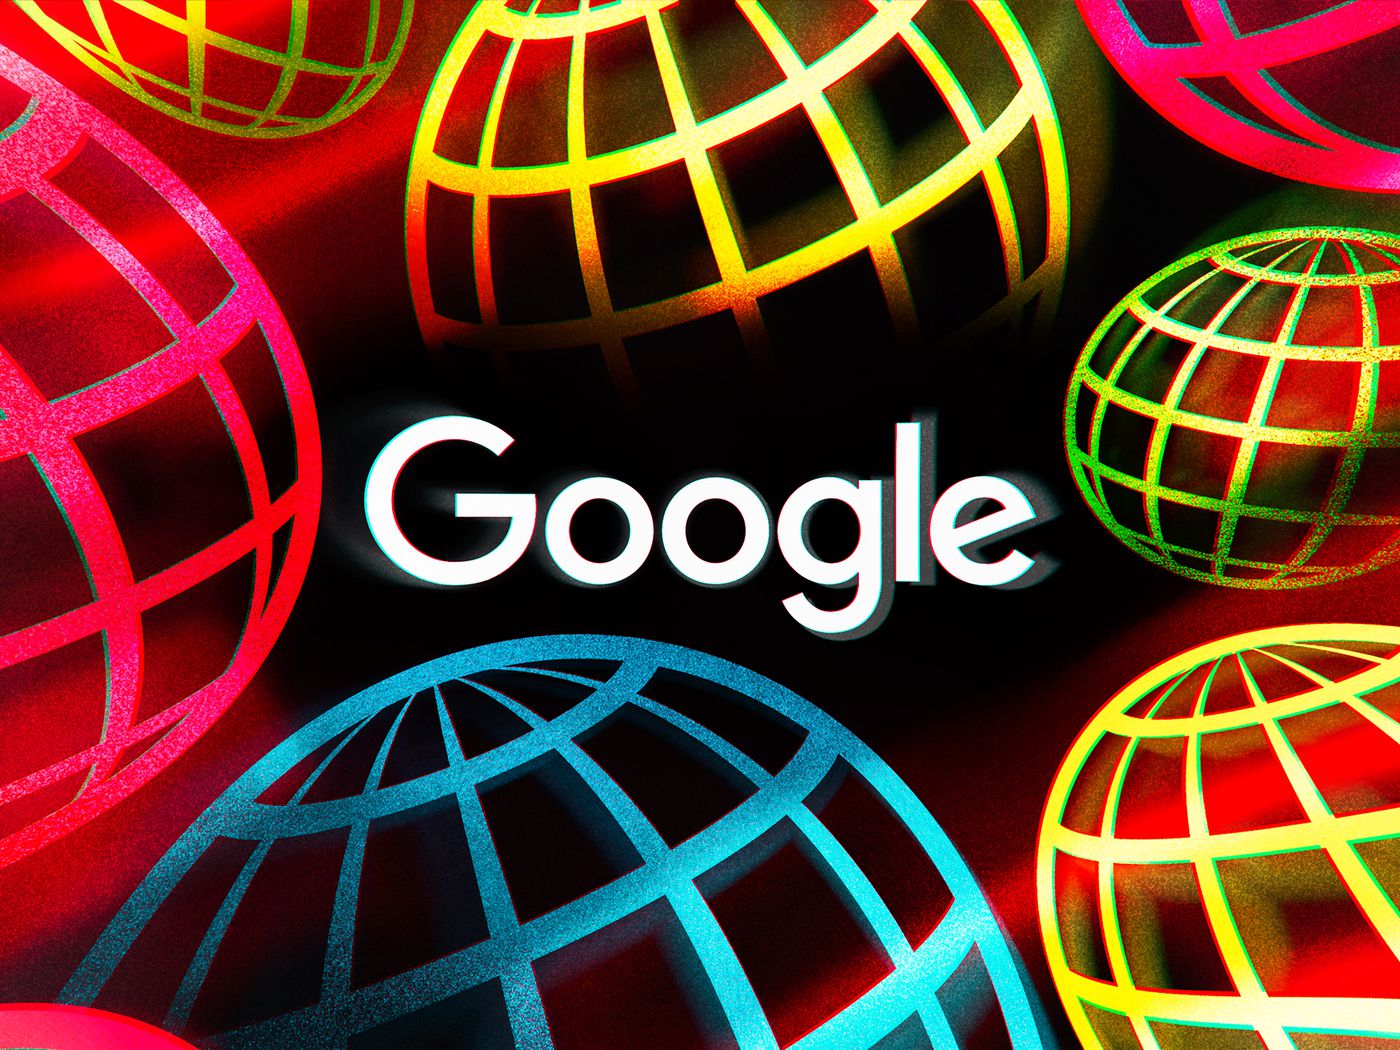 Fitur Baru Google Bisa Hapus History Pencarian Secara Otomatis